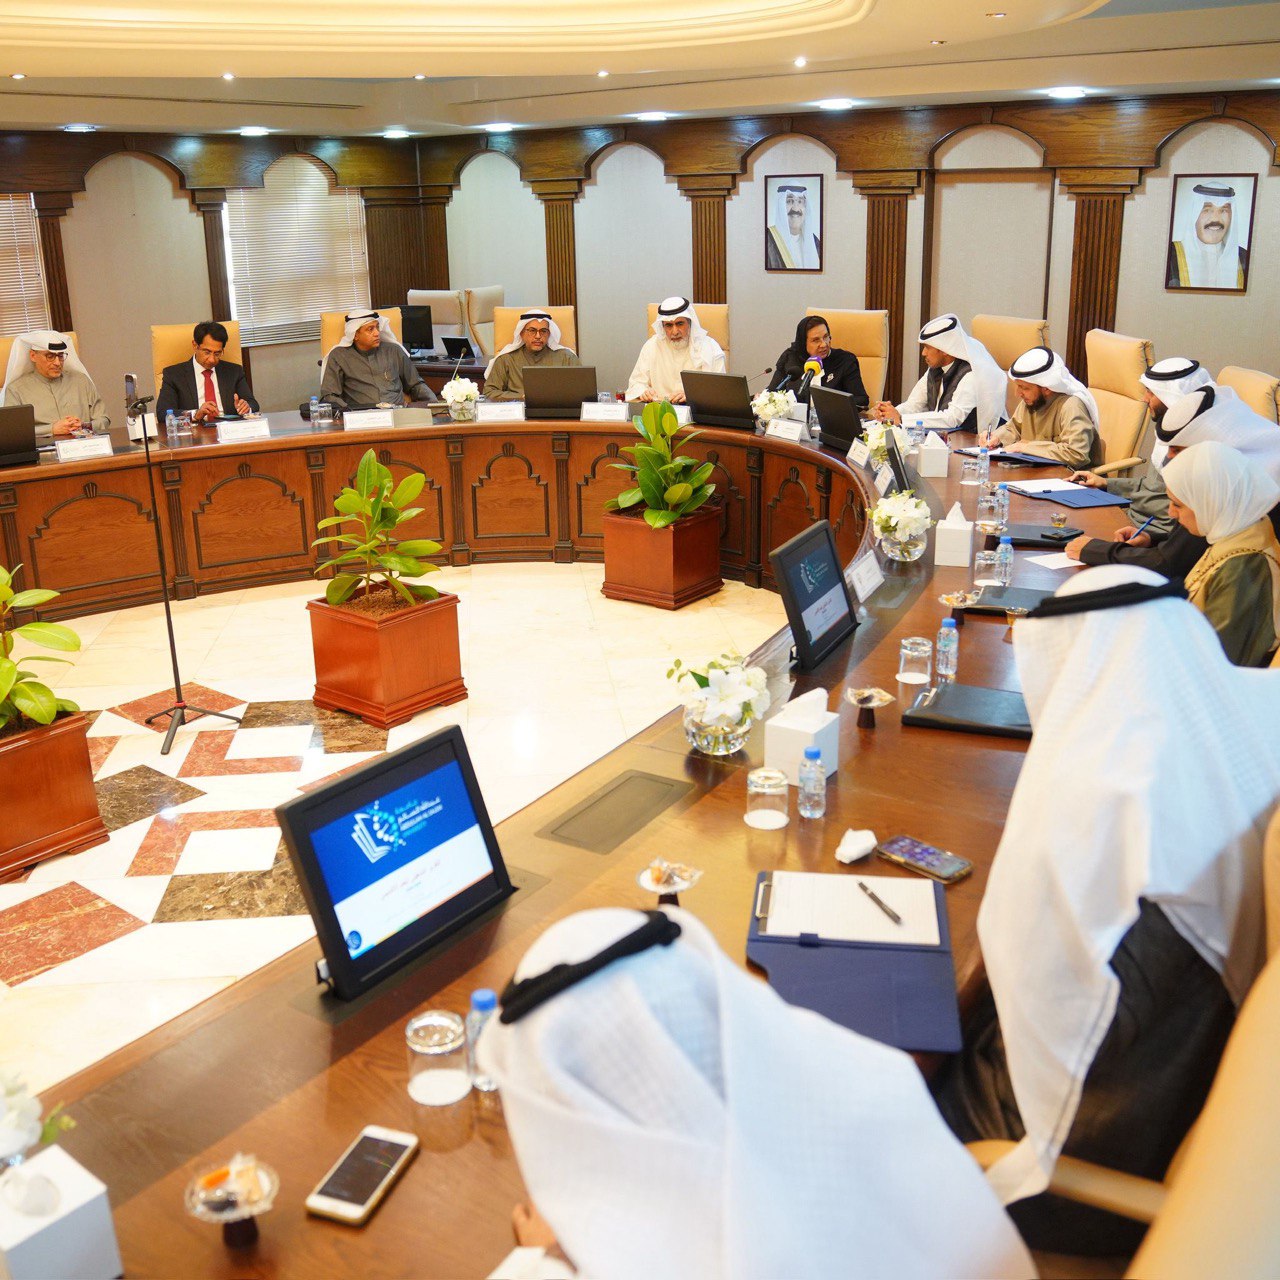 وفد (لجنة شؤون التعليم) يتفقد جامعة عبدالله السالم ويشيد بنهجها الأكاديمي القائم على تحفيز البحث العلمي والابتكار